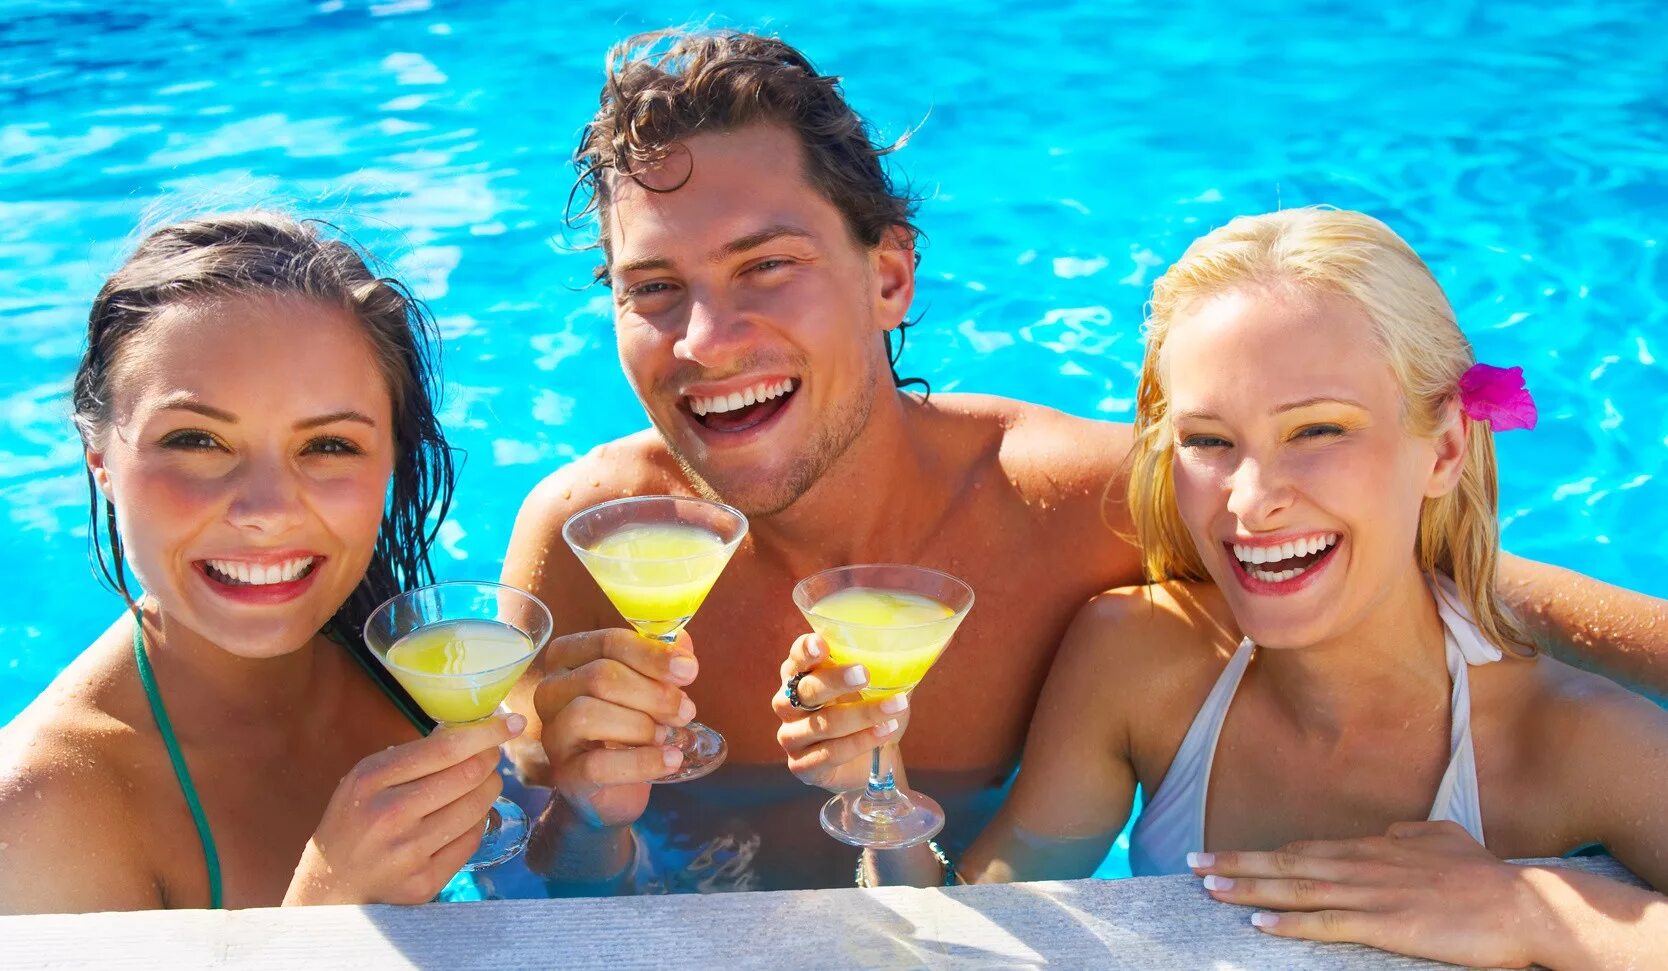 Разнообразие отдыха. Пляжная вечеринка. Летняя вечеринка у бассейна. Фотосессия в бассейне. Люди отдыхают в отеле.